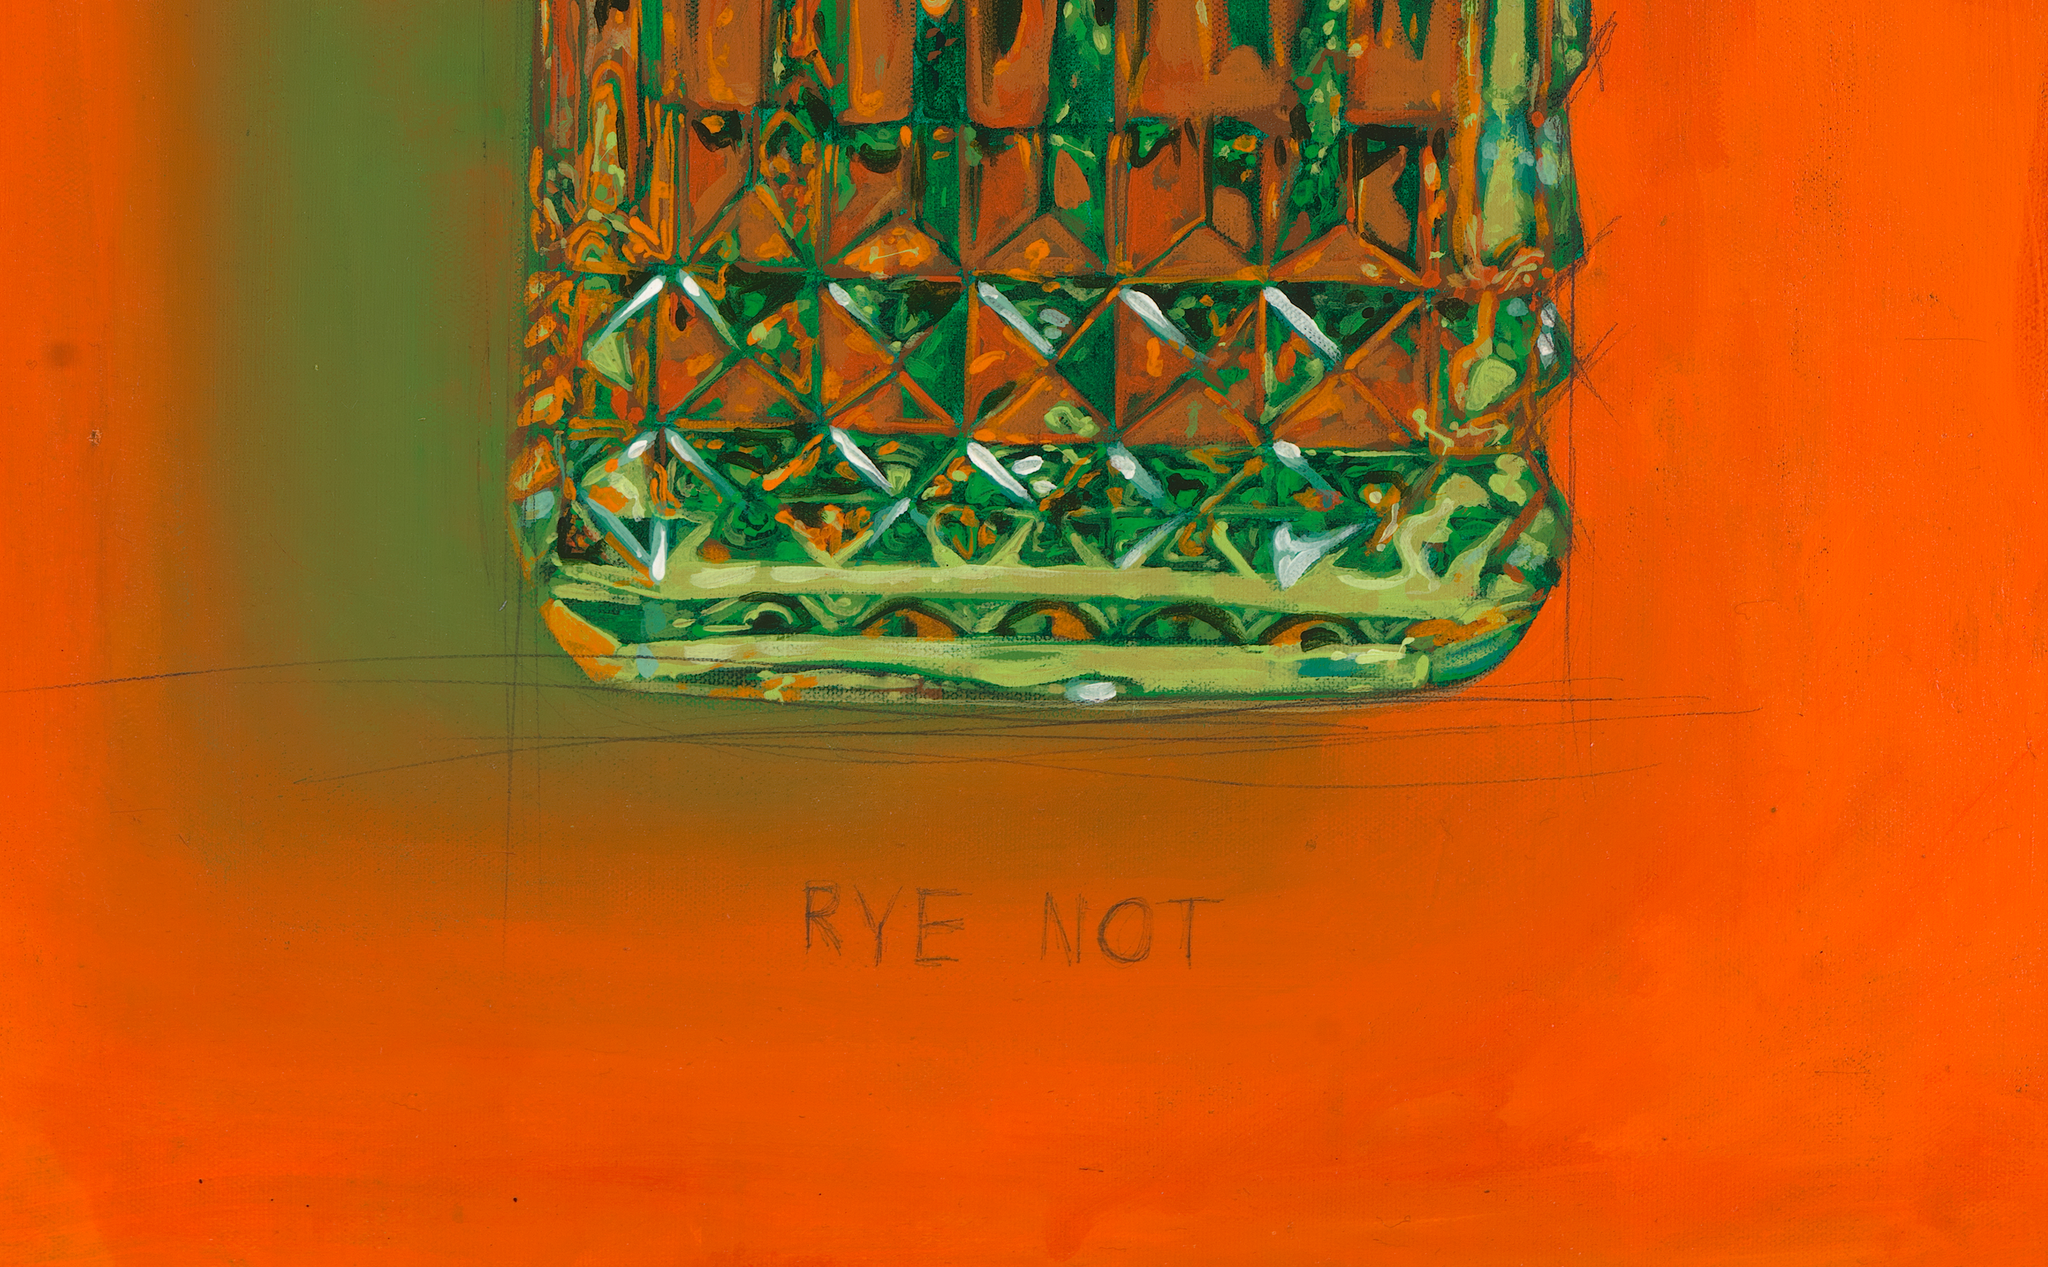 "Rye Not"